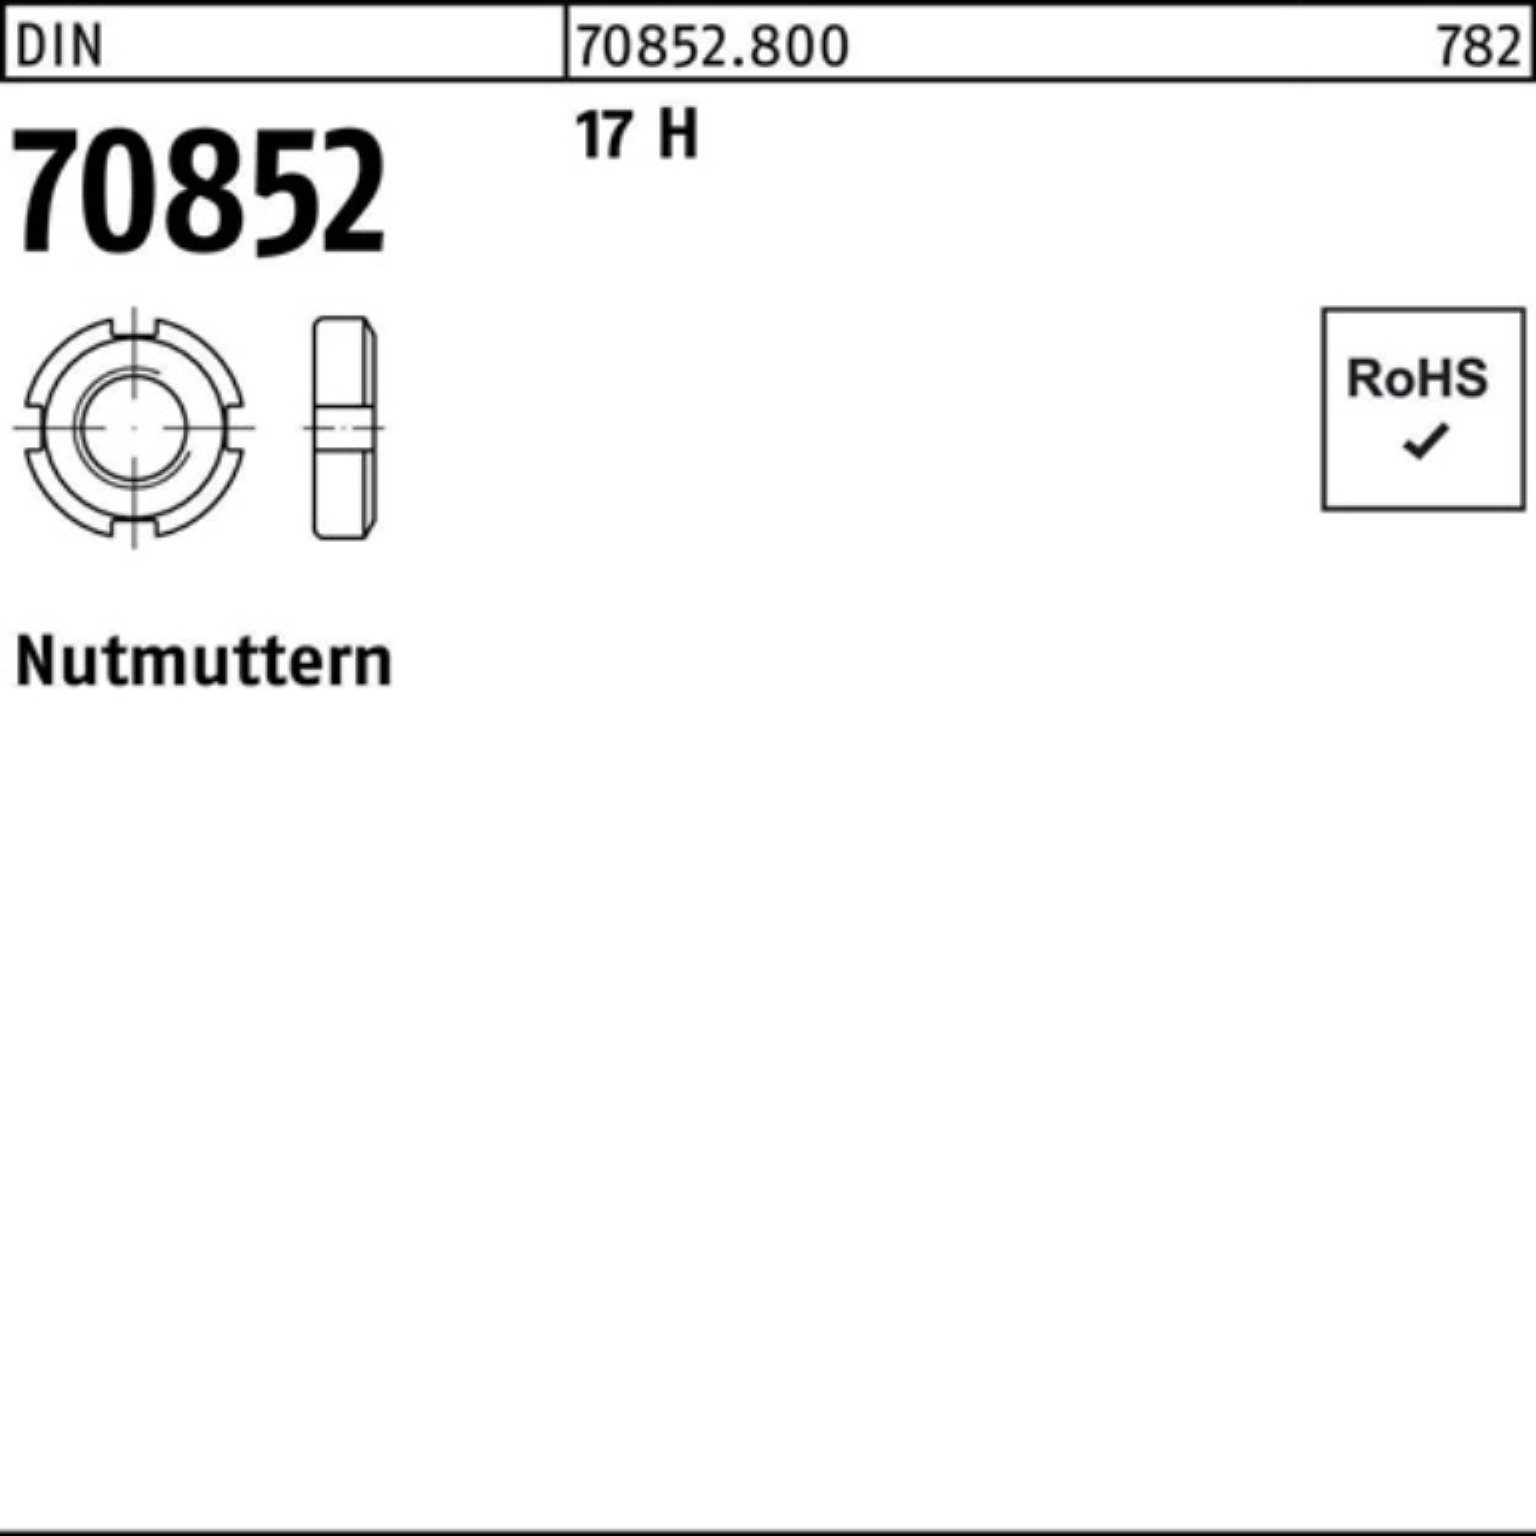 Reyher Nutmutter 100er Pack Nutmutter DIN 70852 M65x 1,5 17 H 1 Stück DIN 70852 17 H N